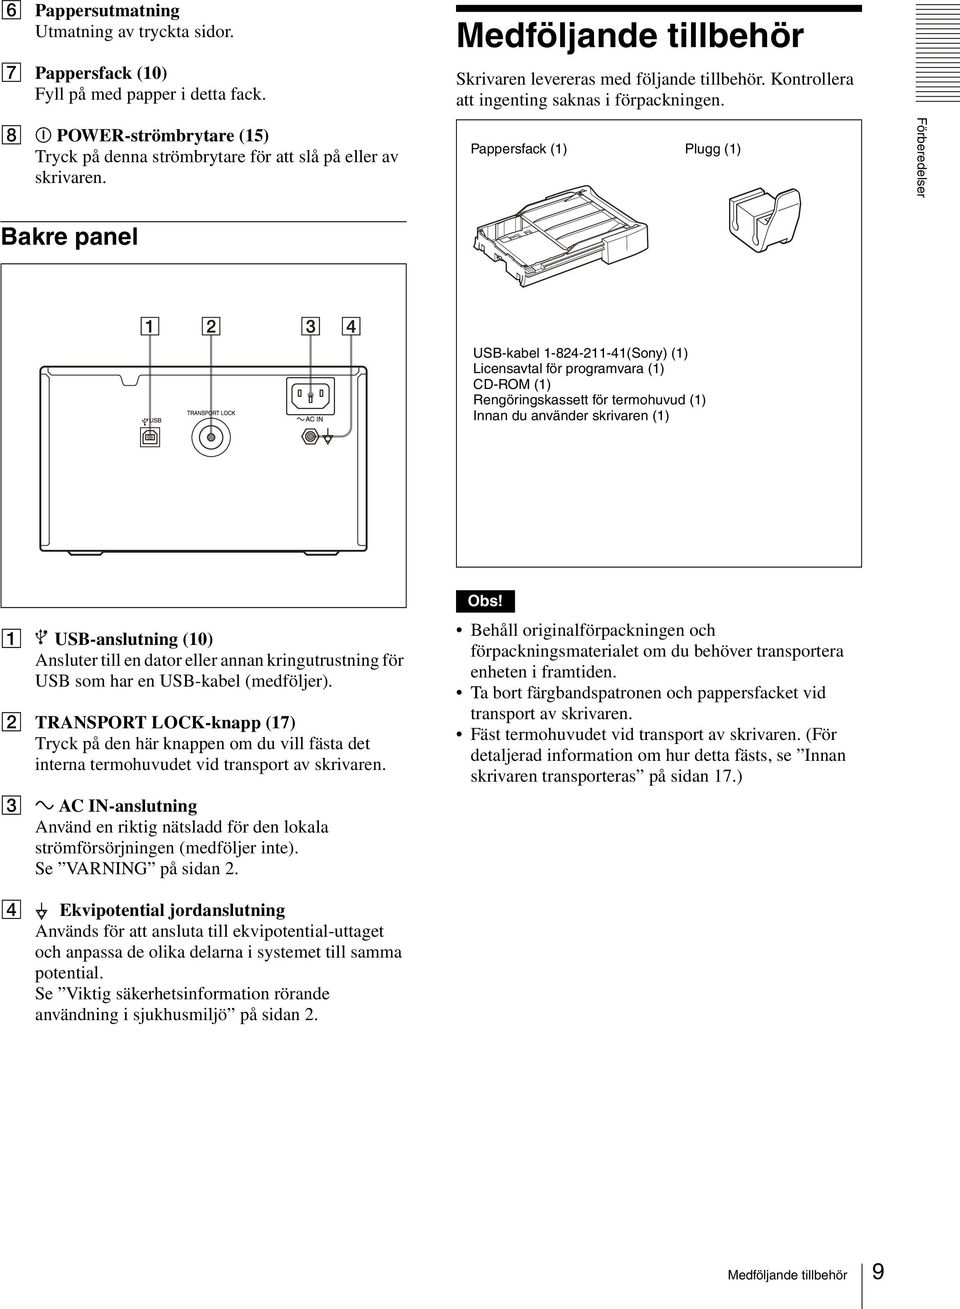 Pappersfack (1) Plugg (1) Förberedelser Bakre panel USB-kabel 1-824-211-41(Sony) (1) Licensavtal för programvara (1) CD-ROM (1) Rengöringskassett för termohuvud (1) Innan du använder skrivaren (1) A